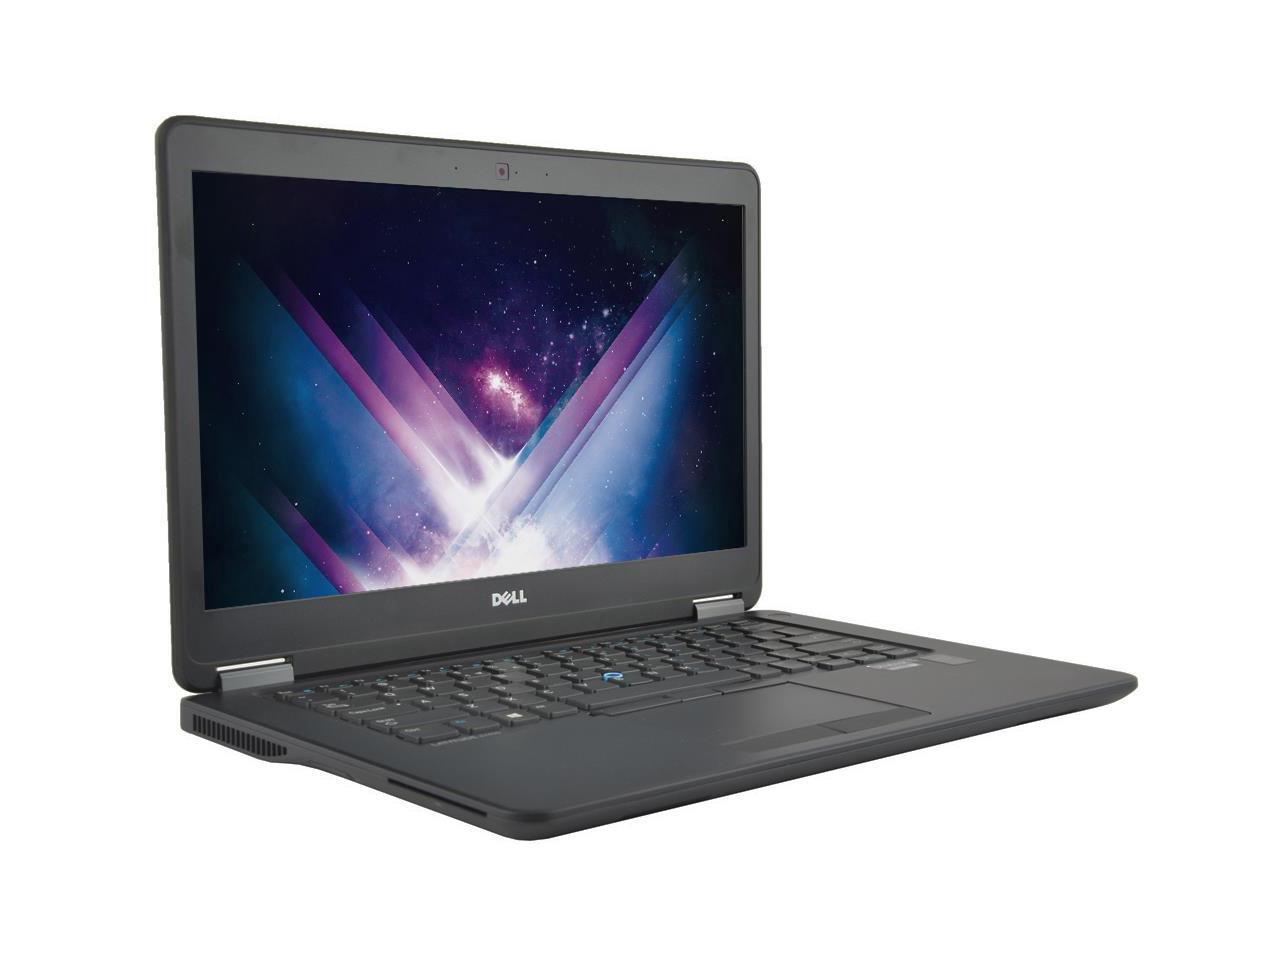 Grade B LCD Dell Latitude E7450 14" Laptop, Intel Core i5 5300U 2.3Ghz, 8GB DDR3, 128GB SSD Hard Drive, HDMI, Webcam, Windows 10 Pro x64